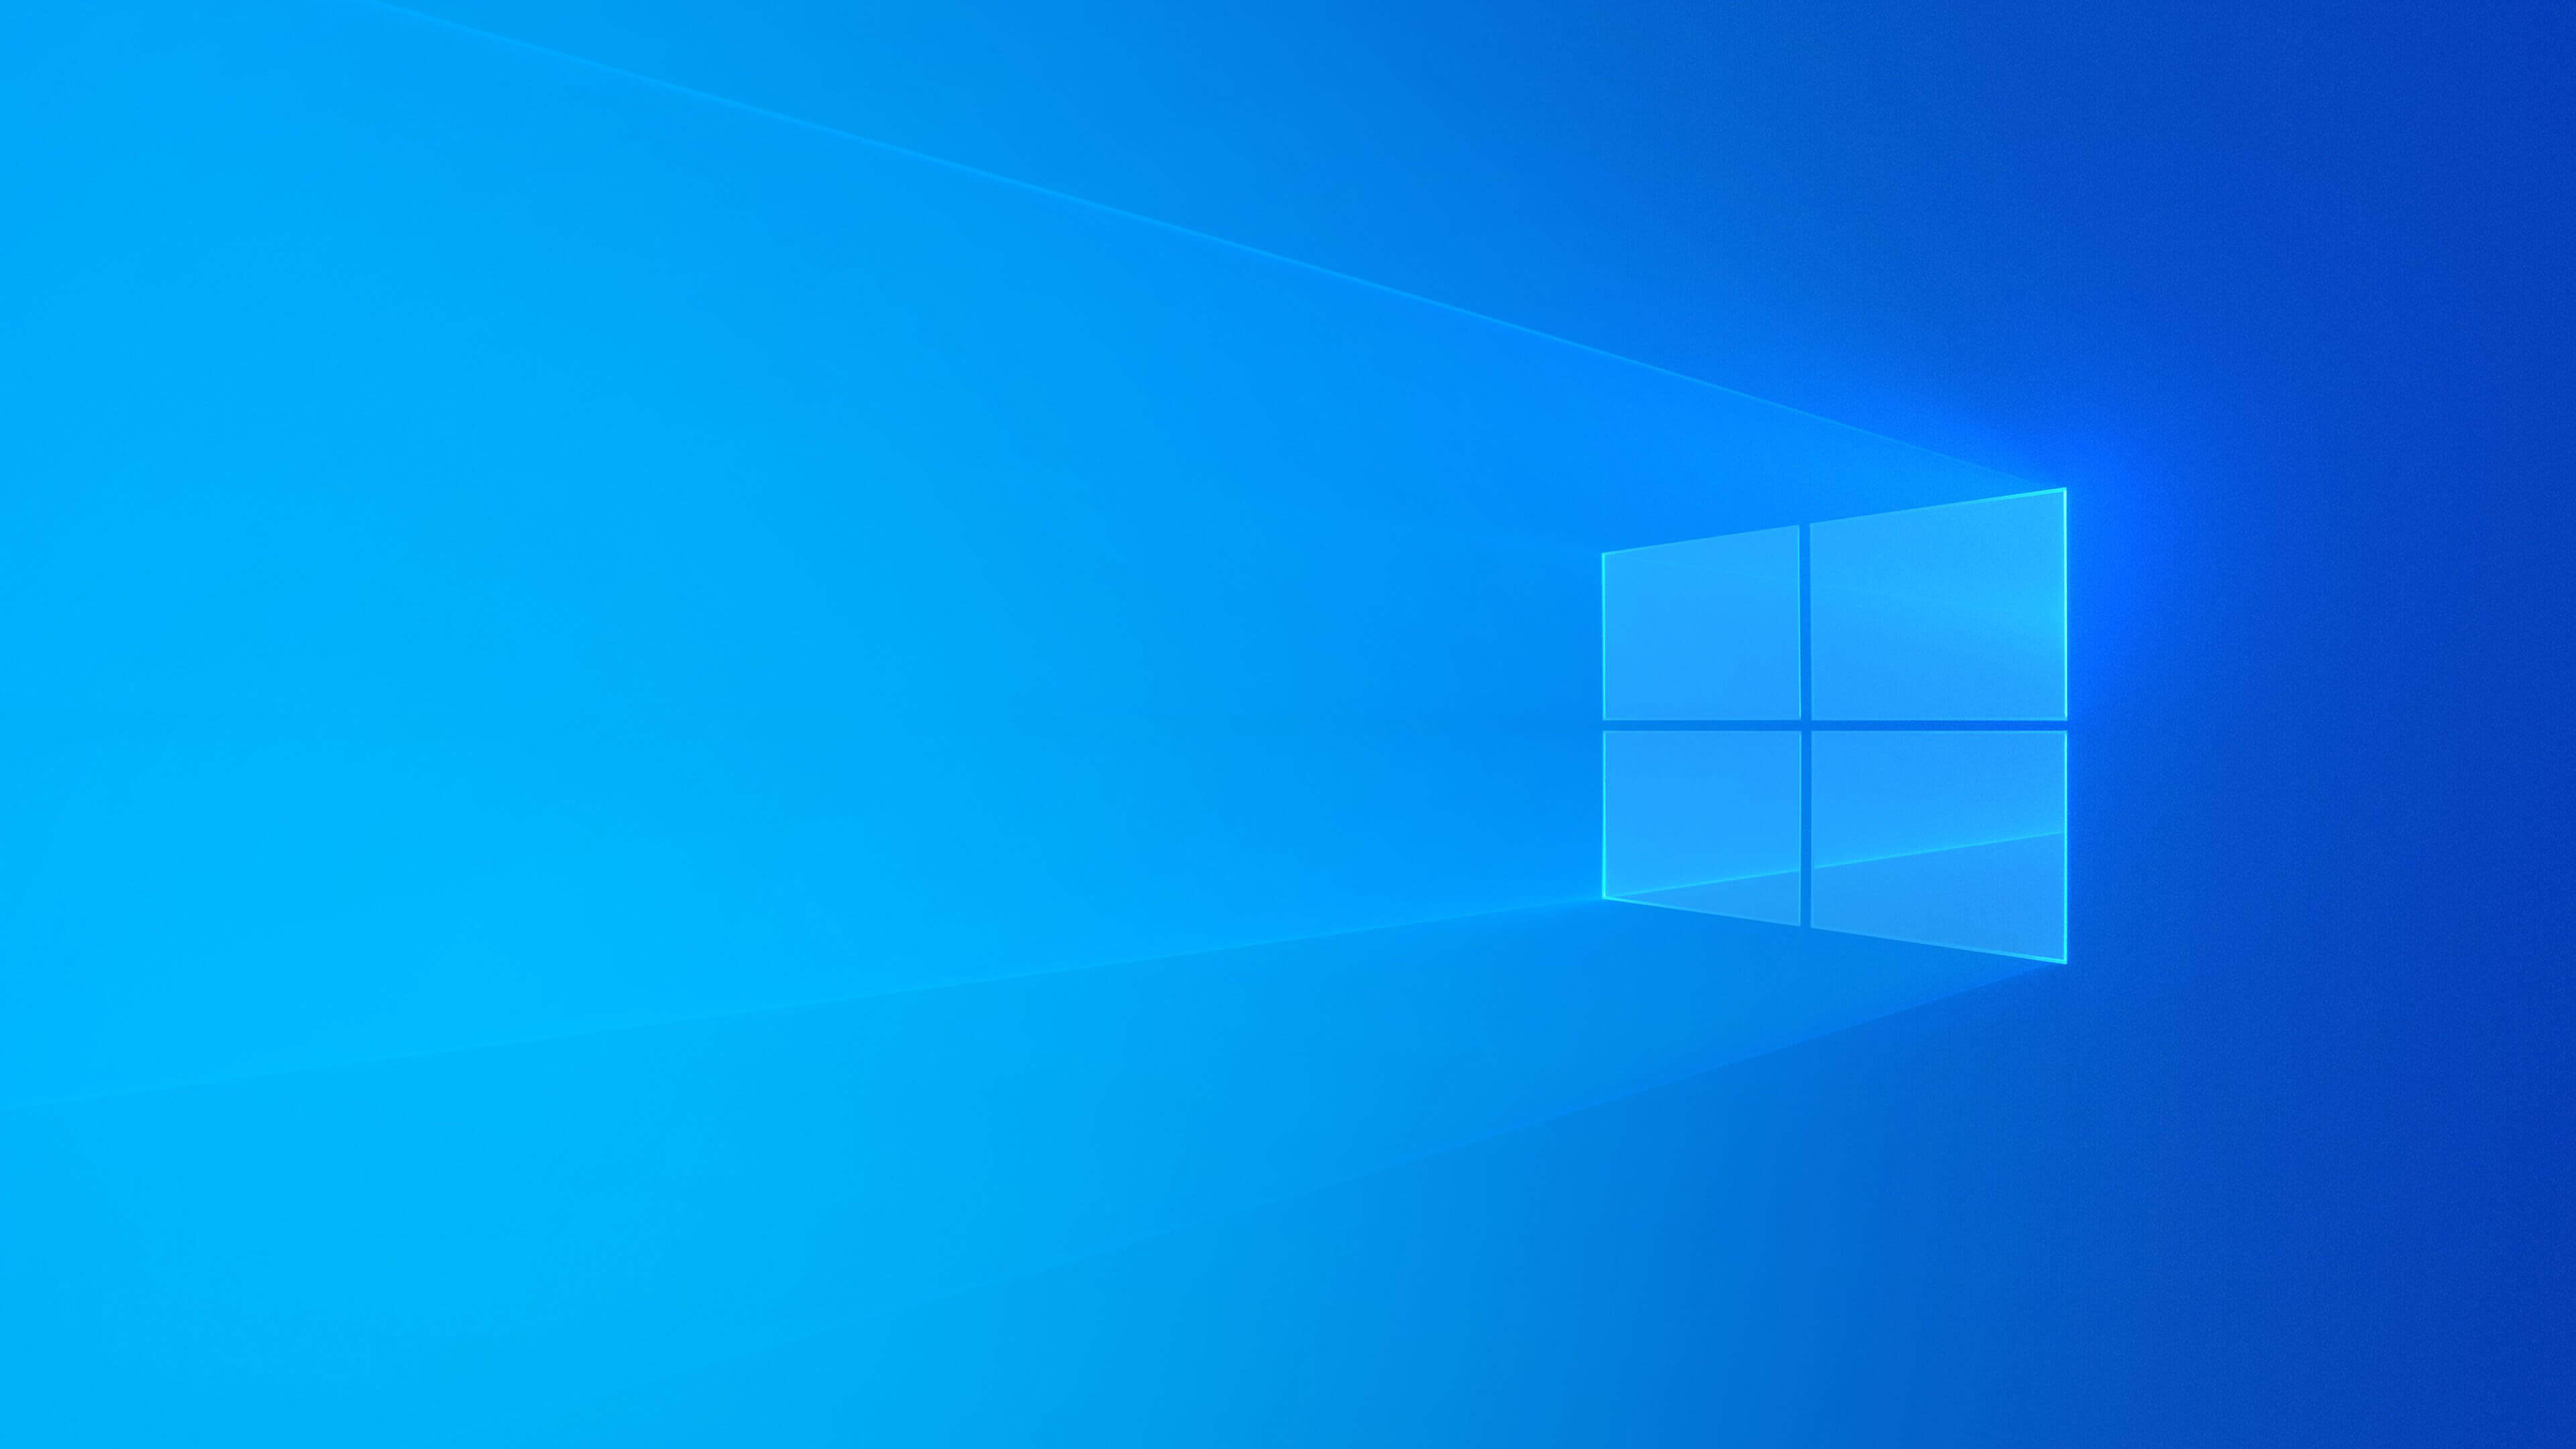 Hình nền Windows 10 xanh 4K đem lại không gian mới lạ và sáng tạo cho máy tính của bạn. Với màu xanh đậm, hình nền này sẽ làm cho màn hình của bạn trông sống động và ấn tượng hơn bao giờ hết. Hãy cùng chiêm ngưỡng hình ảnh này để cảm nhận sự thay đổi mà nó mang lại.